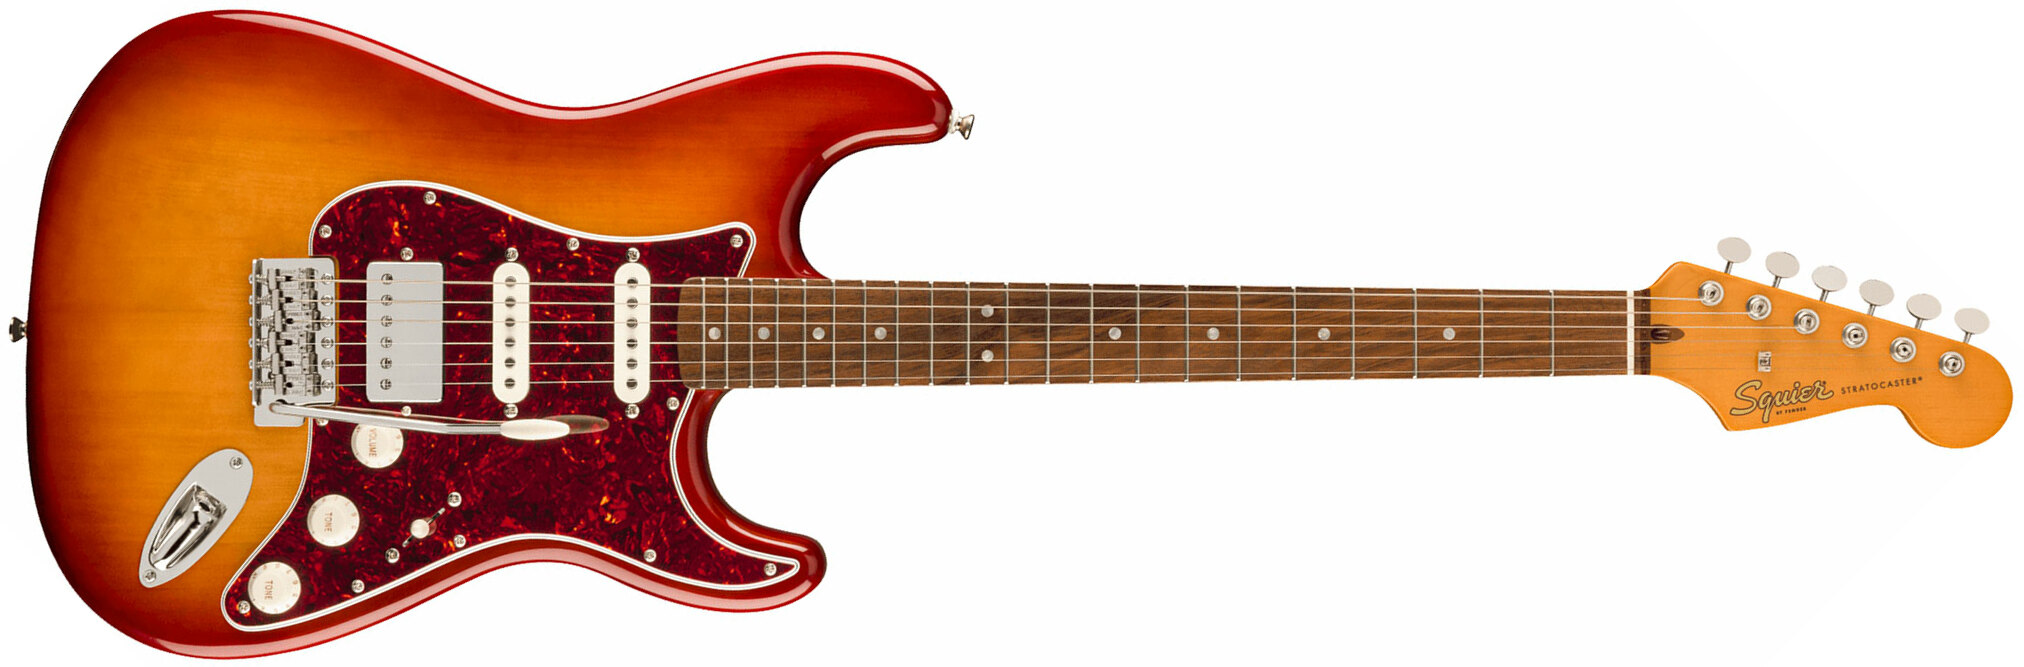 Squier Strat 60s Classic Vibe Ltd Hss Trem Lau - Sienna Sunburst - Elektrische gitaar in Str-vorm - Main picture